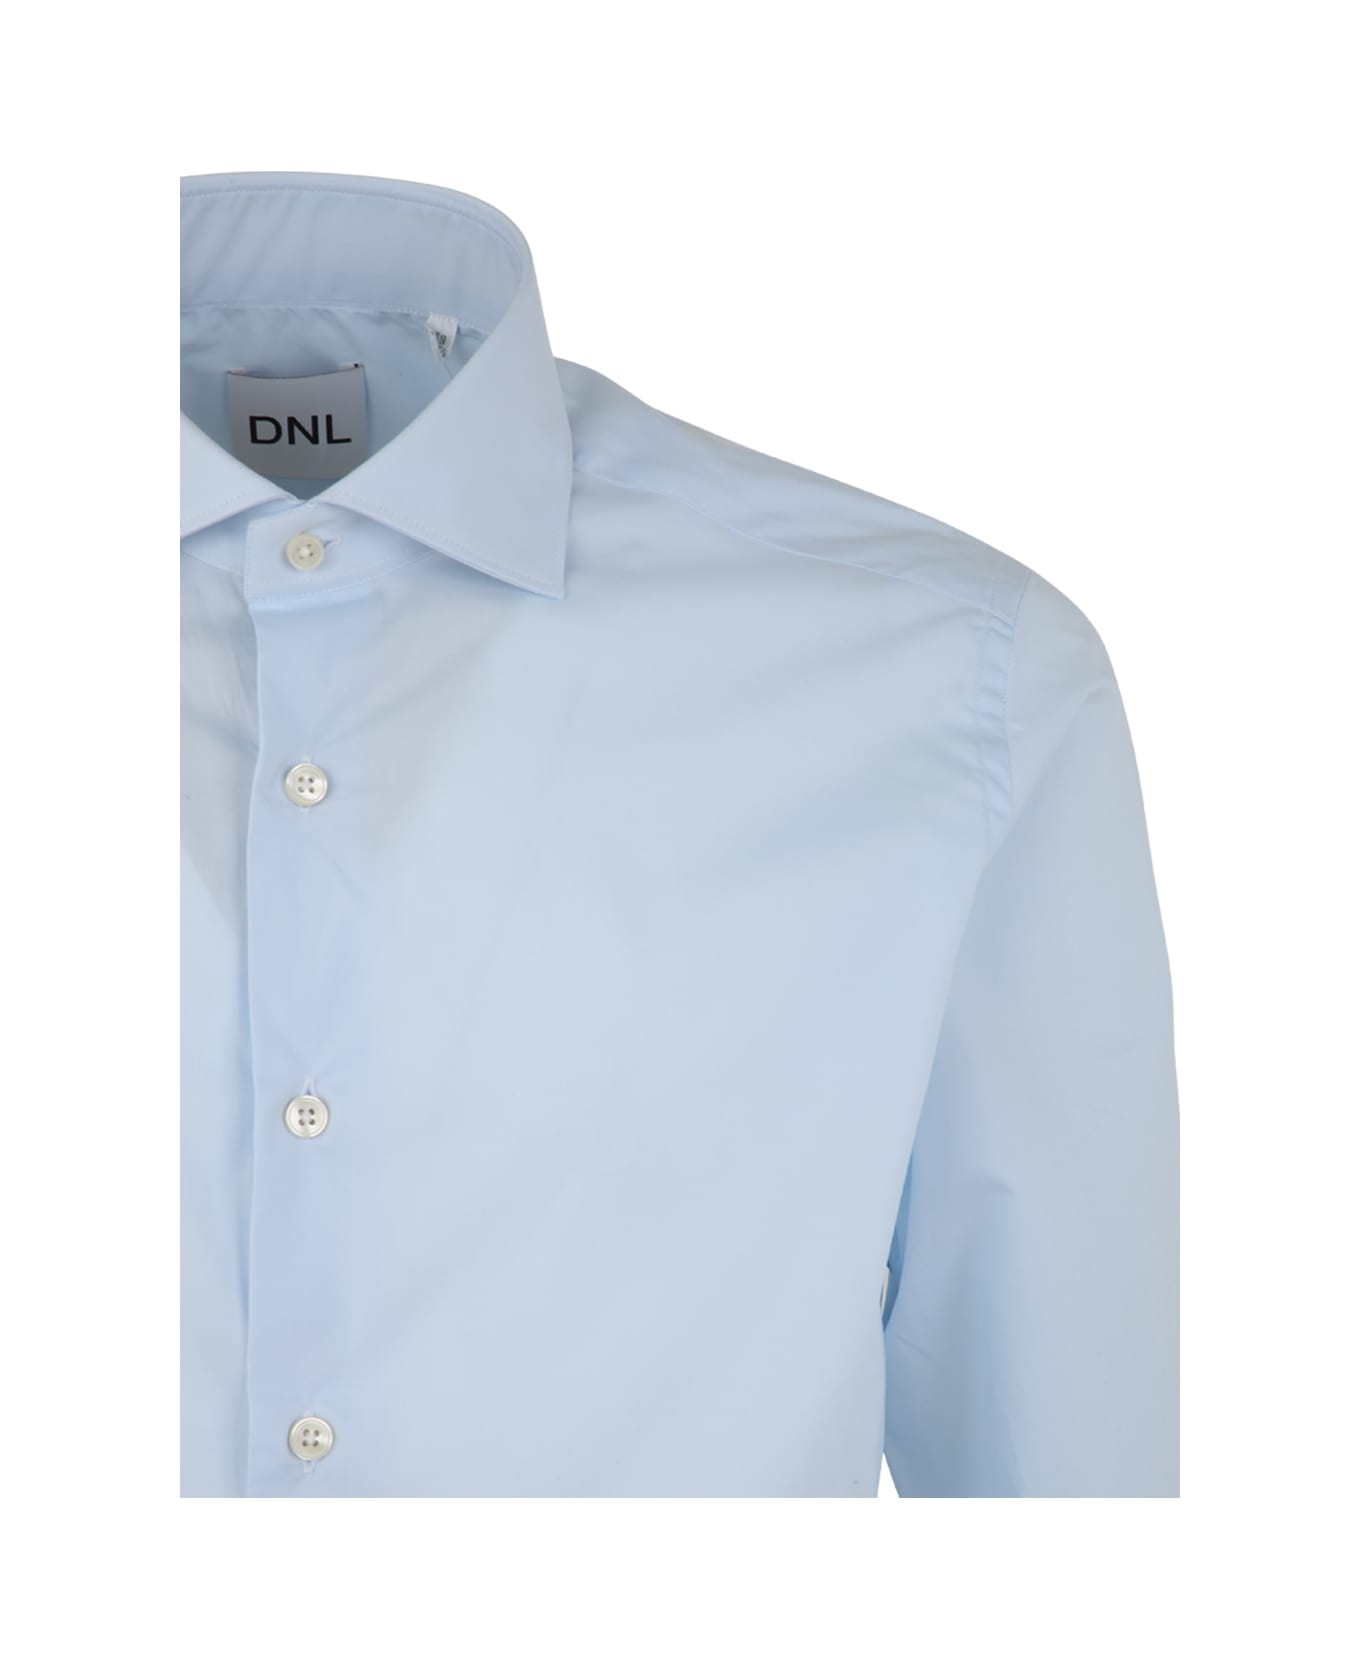 DNL Shirt - Light Blue